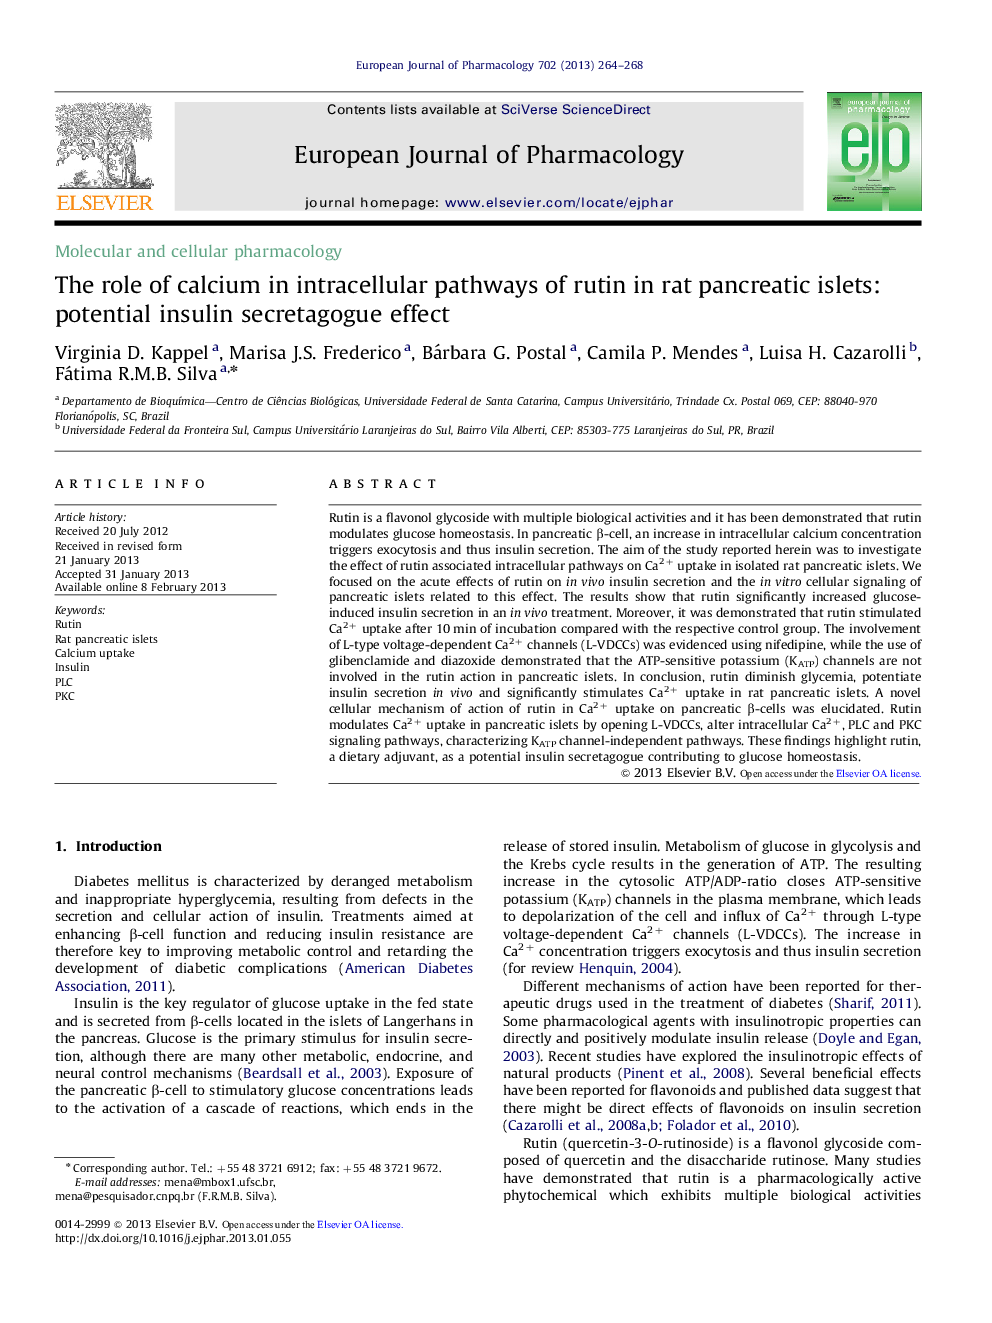 فارماکولوژی مولکولی و سلولی نقش کلسیم در مسیرهای داخل سلولی روتن در جزایر پانکراس رت موثر است: اثرات ترشح انسولین بالقوه 